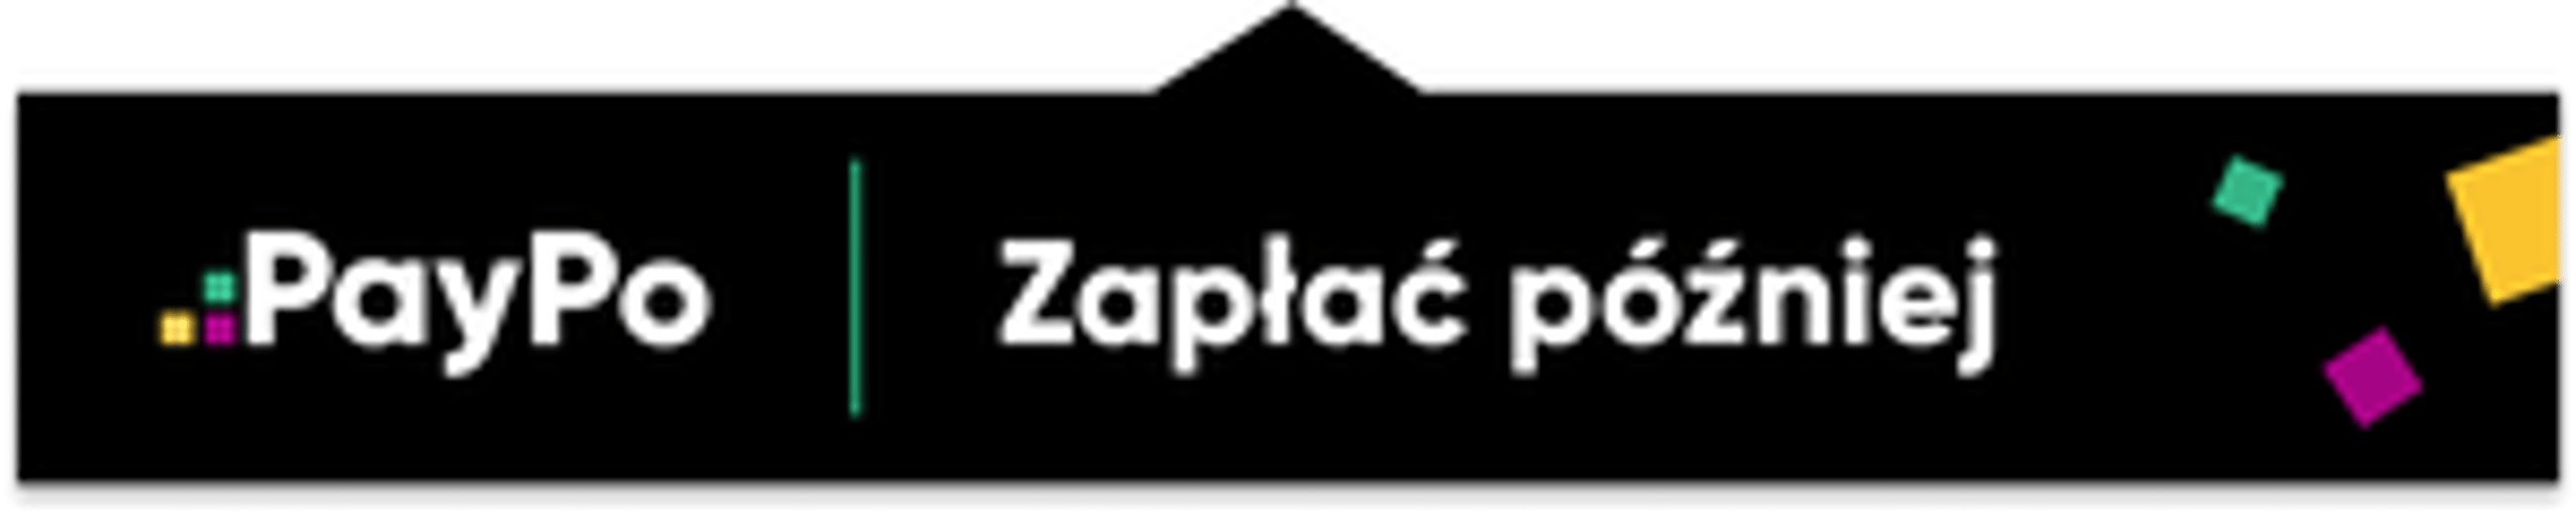 PayPo_logo